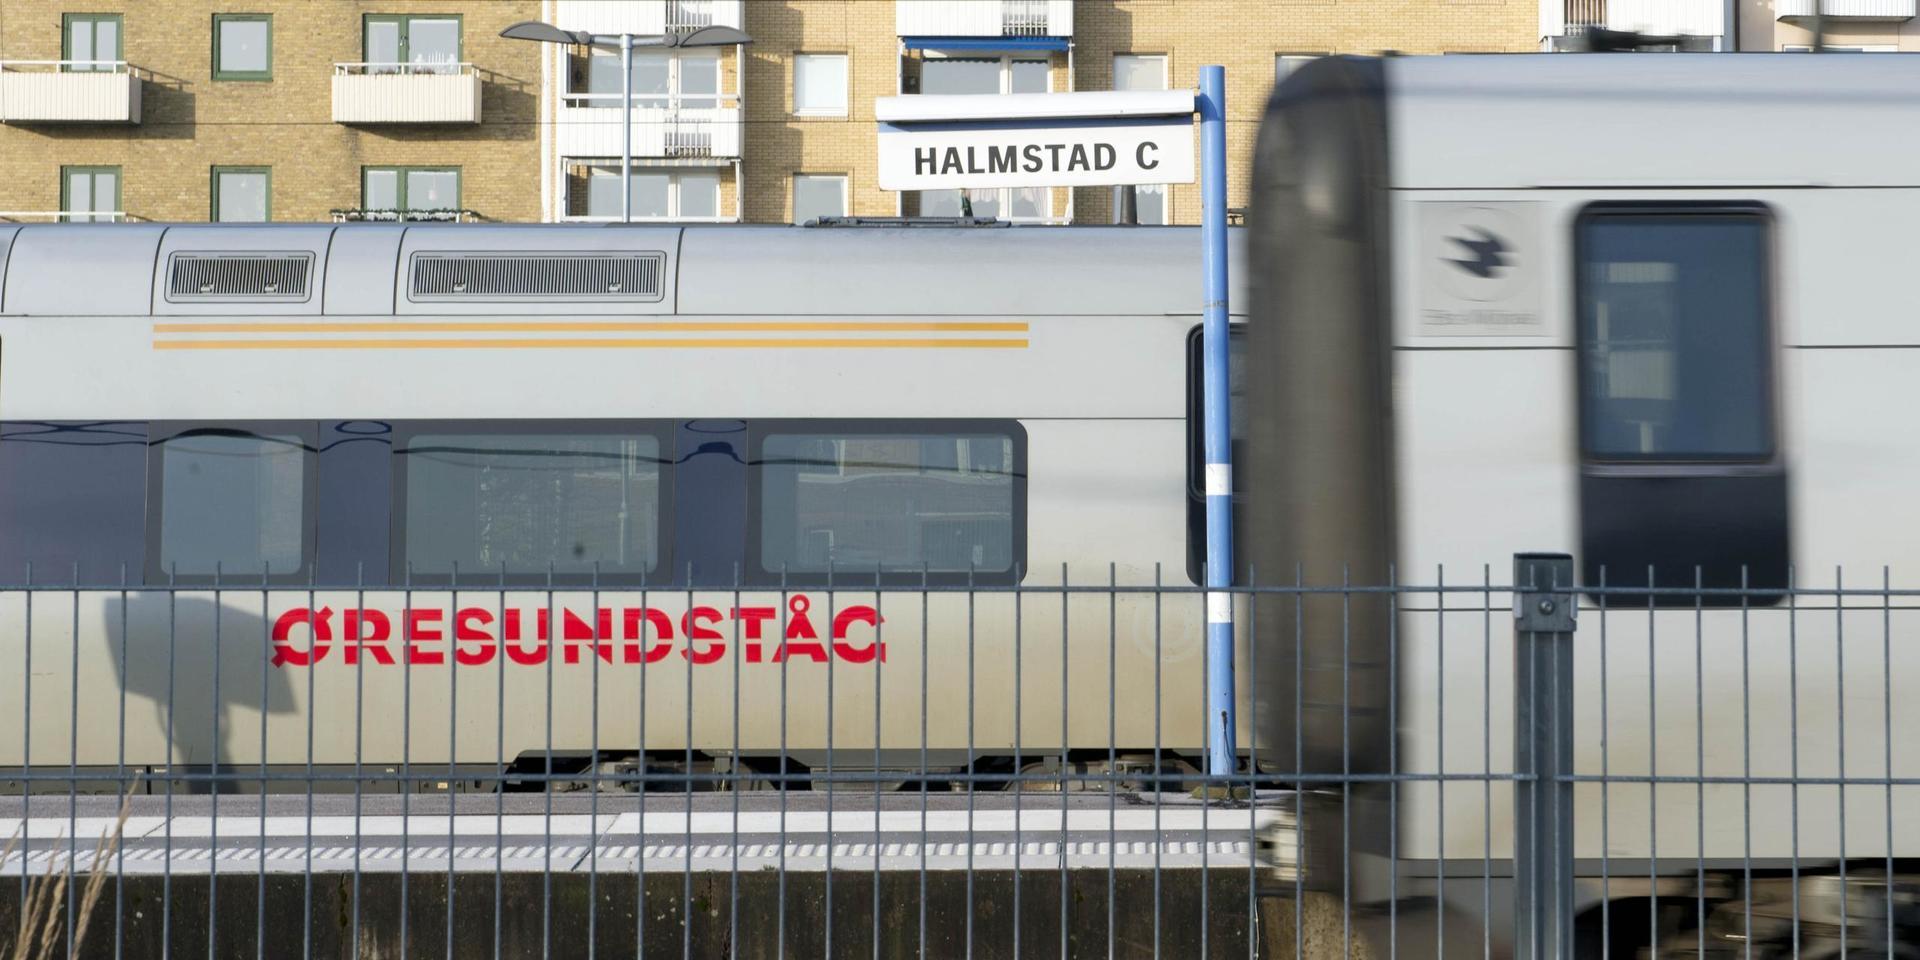 Tåget stannade i Halmstad på söndagskvällen och en polispatrull mötte upp.